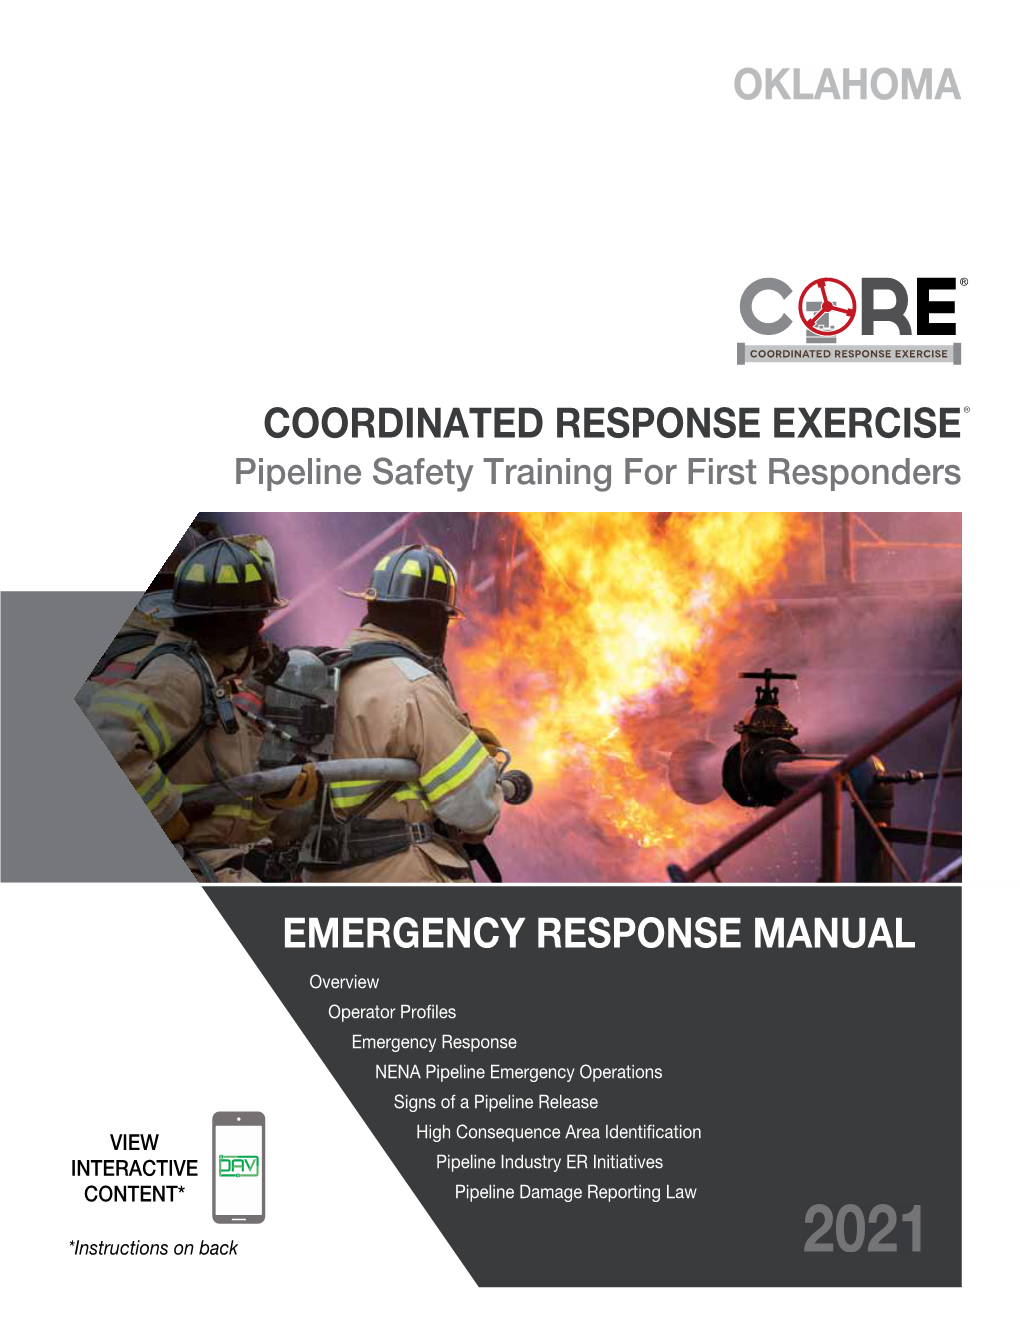 2021 Emergency Response Manual